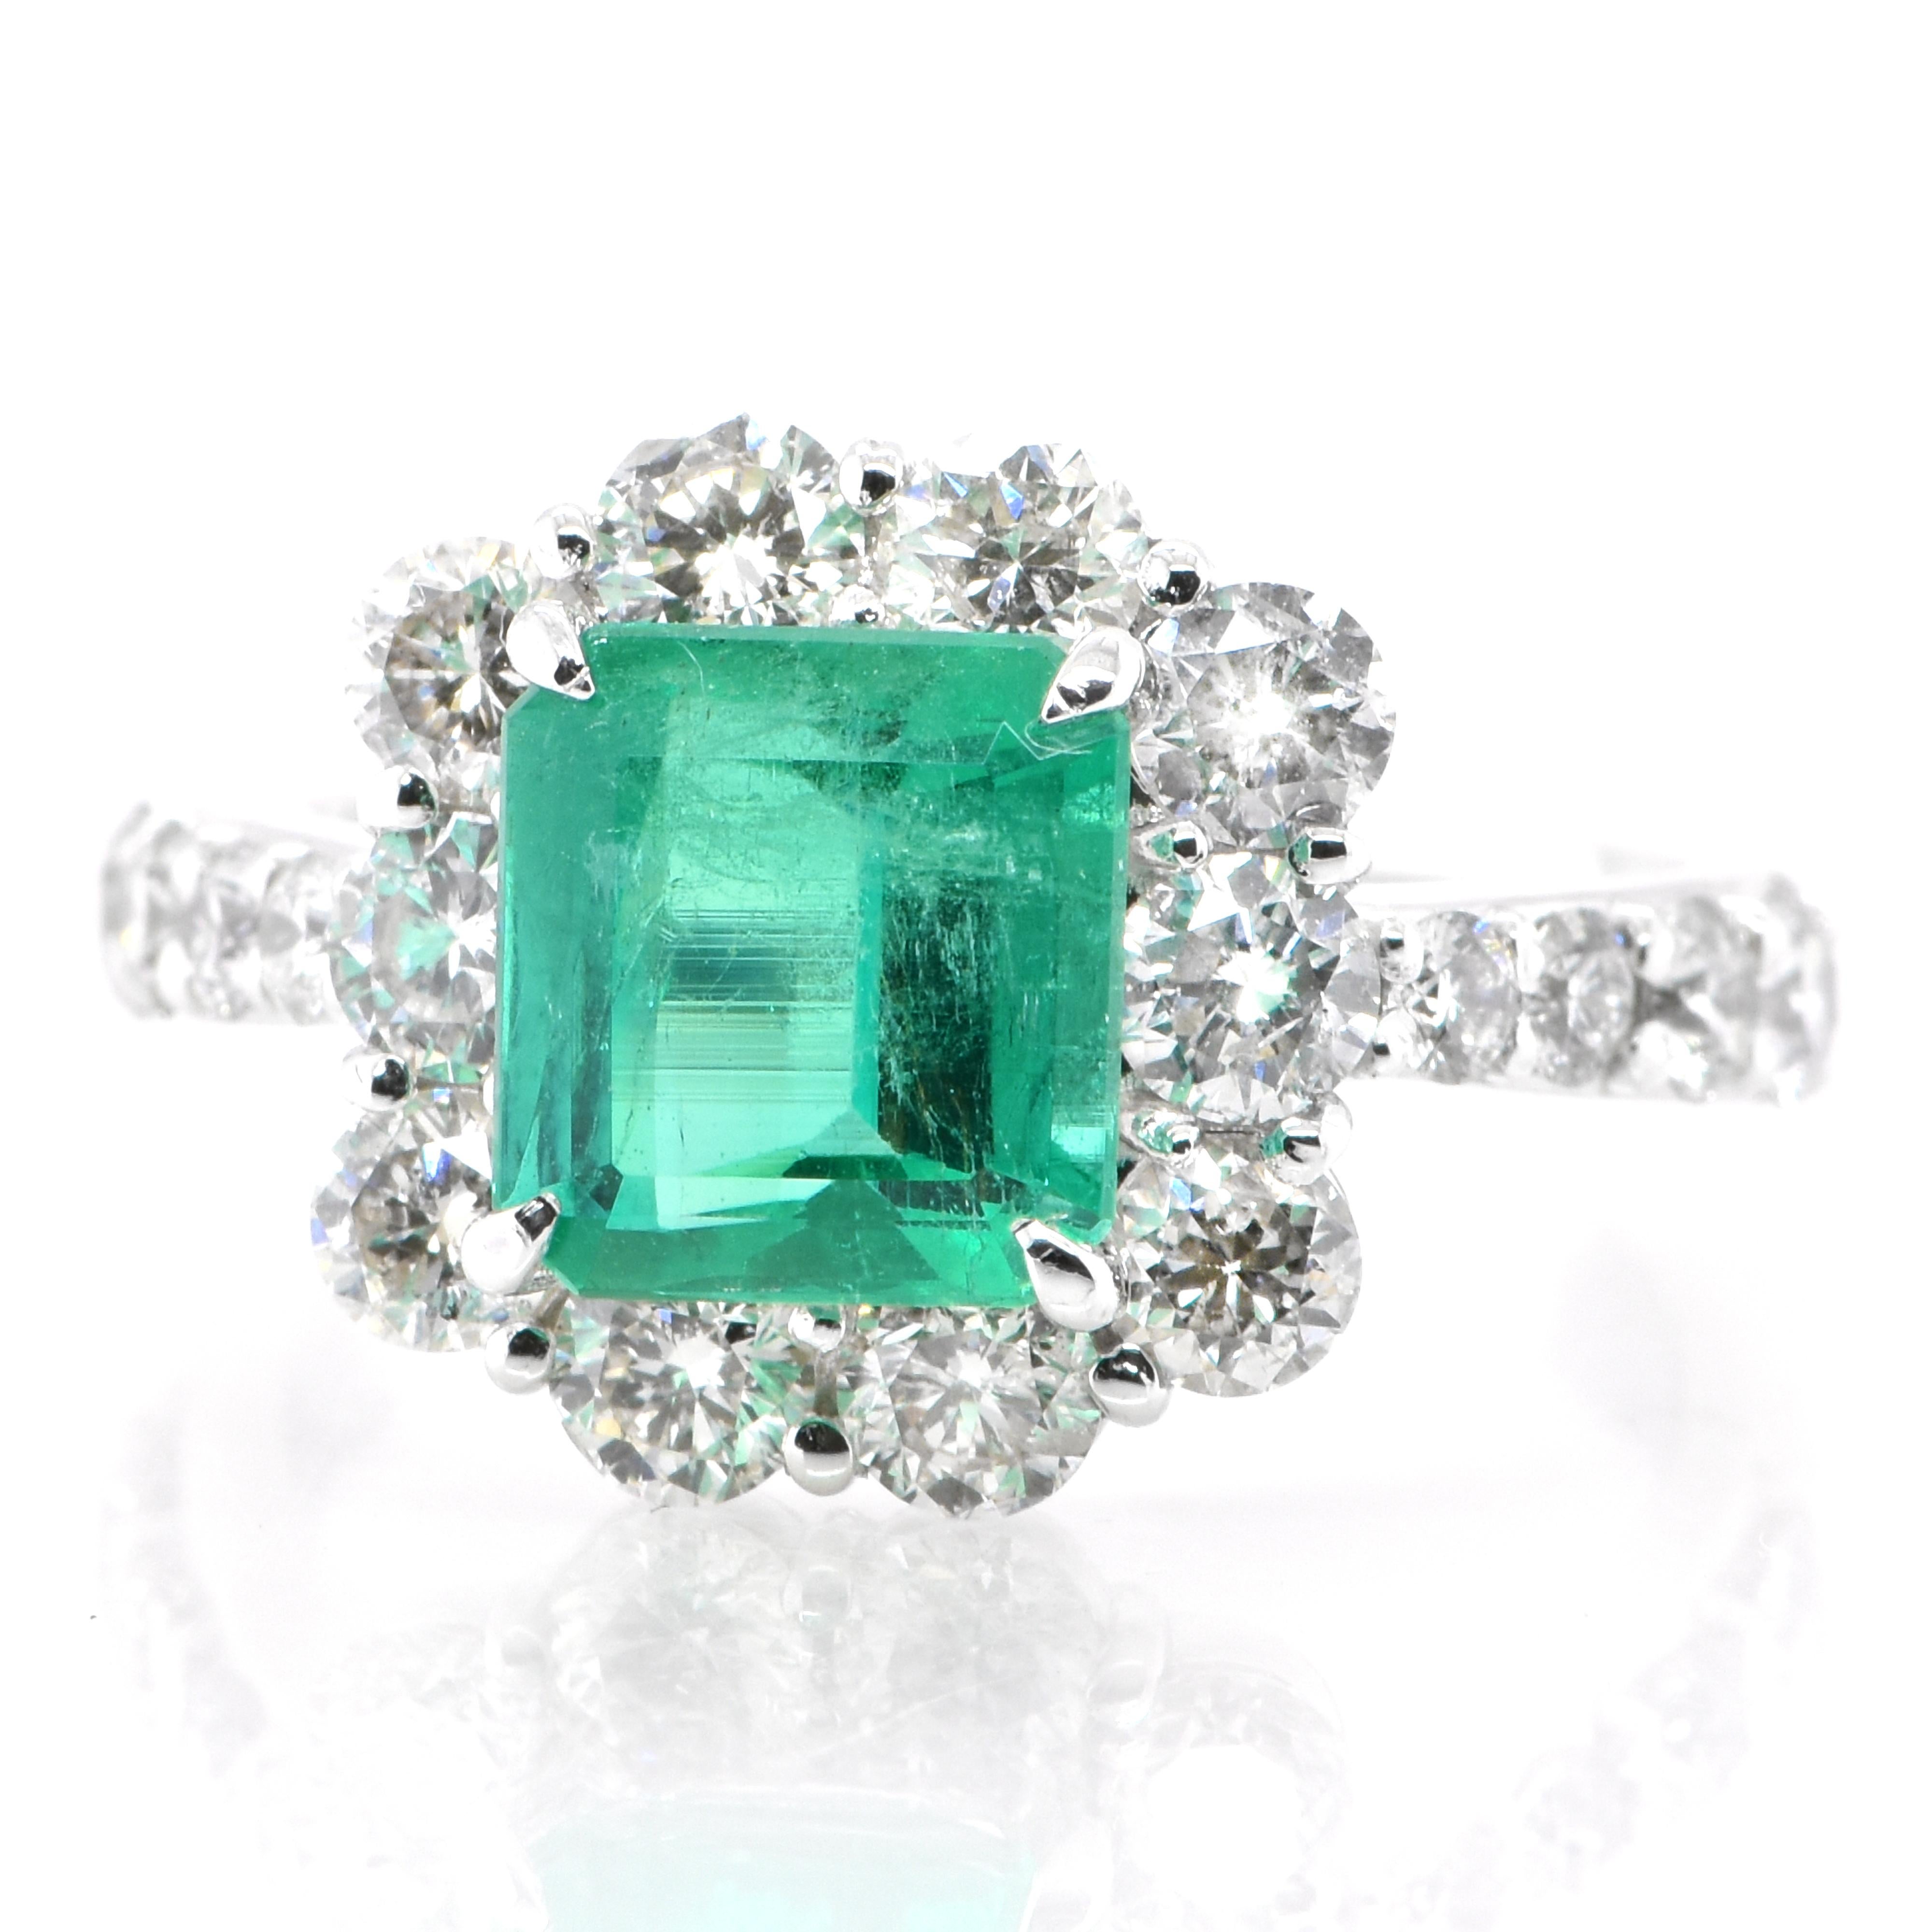 Ein atemberaubender Ring mit einem natürlichen Smaragd von 1,86 Karat und Diamanten von 1,62 Karat in Platin eingefasst. Seit Tausenden von Jahren bewundern die Menschen das Grün des Smaragds. Smaragde werden seit jeher mit den üppigsten